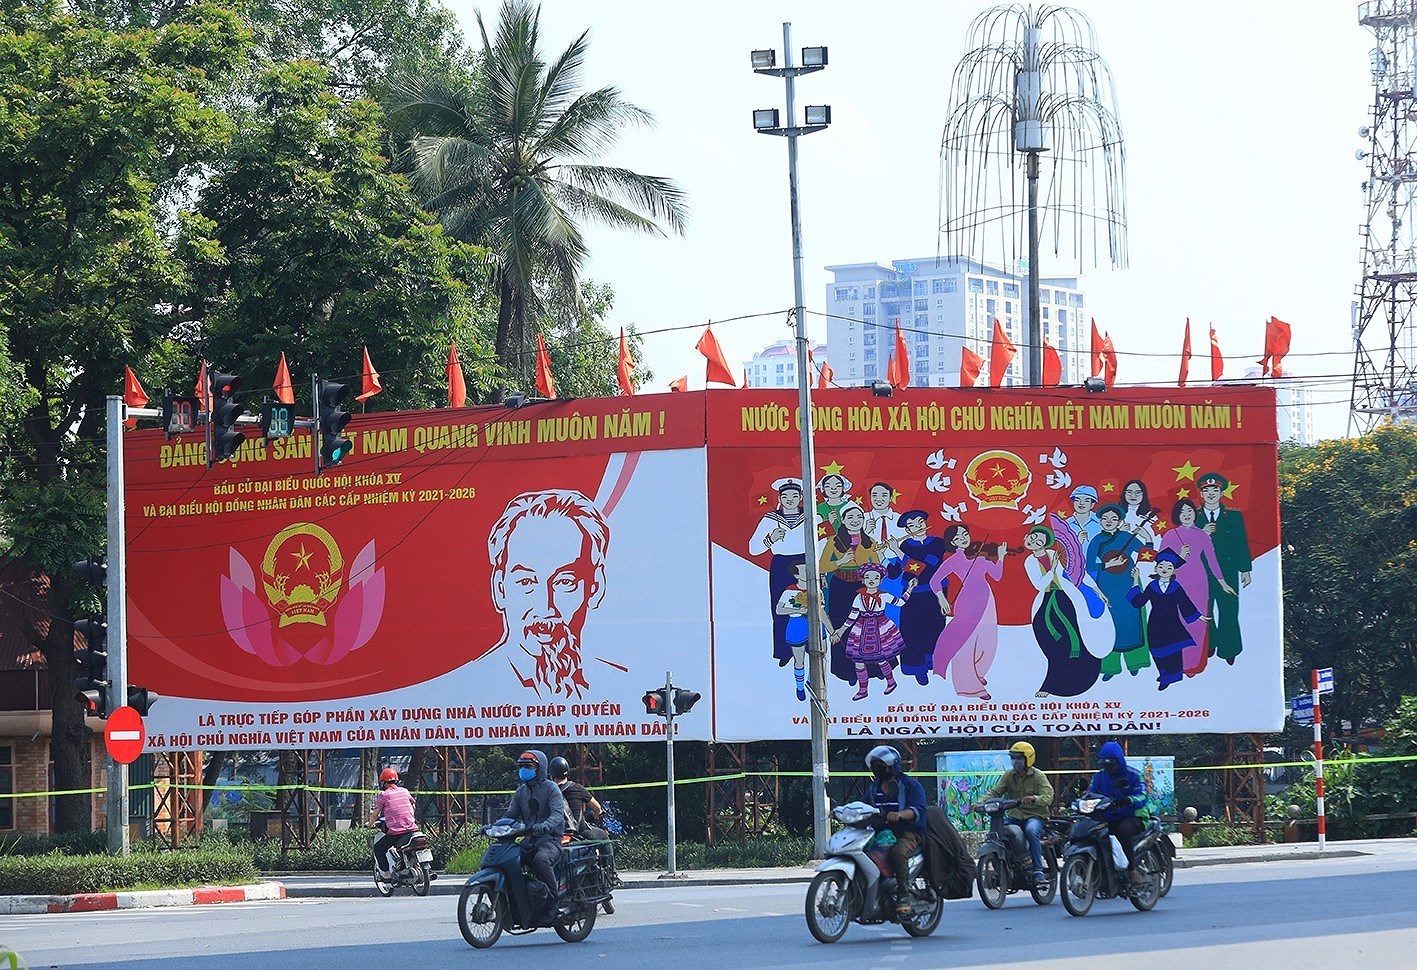 Le Vietnam est un point positif en termes de composition des deputes de l’Assemblee nationale hinh anh 1